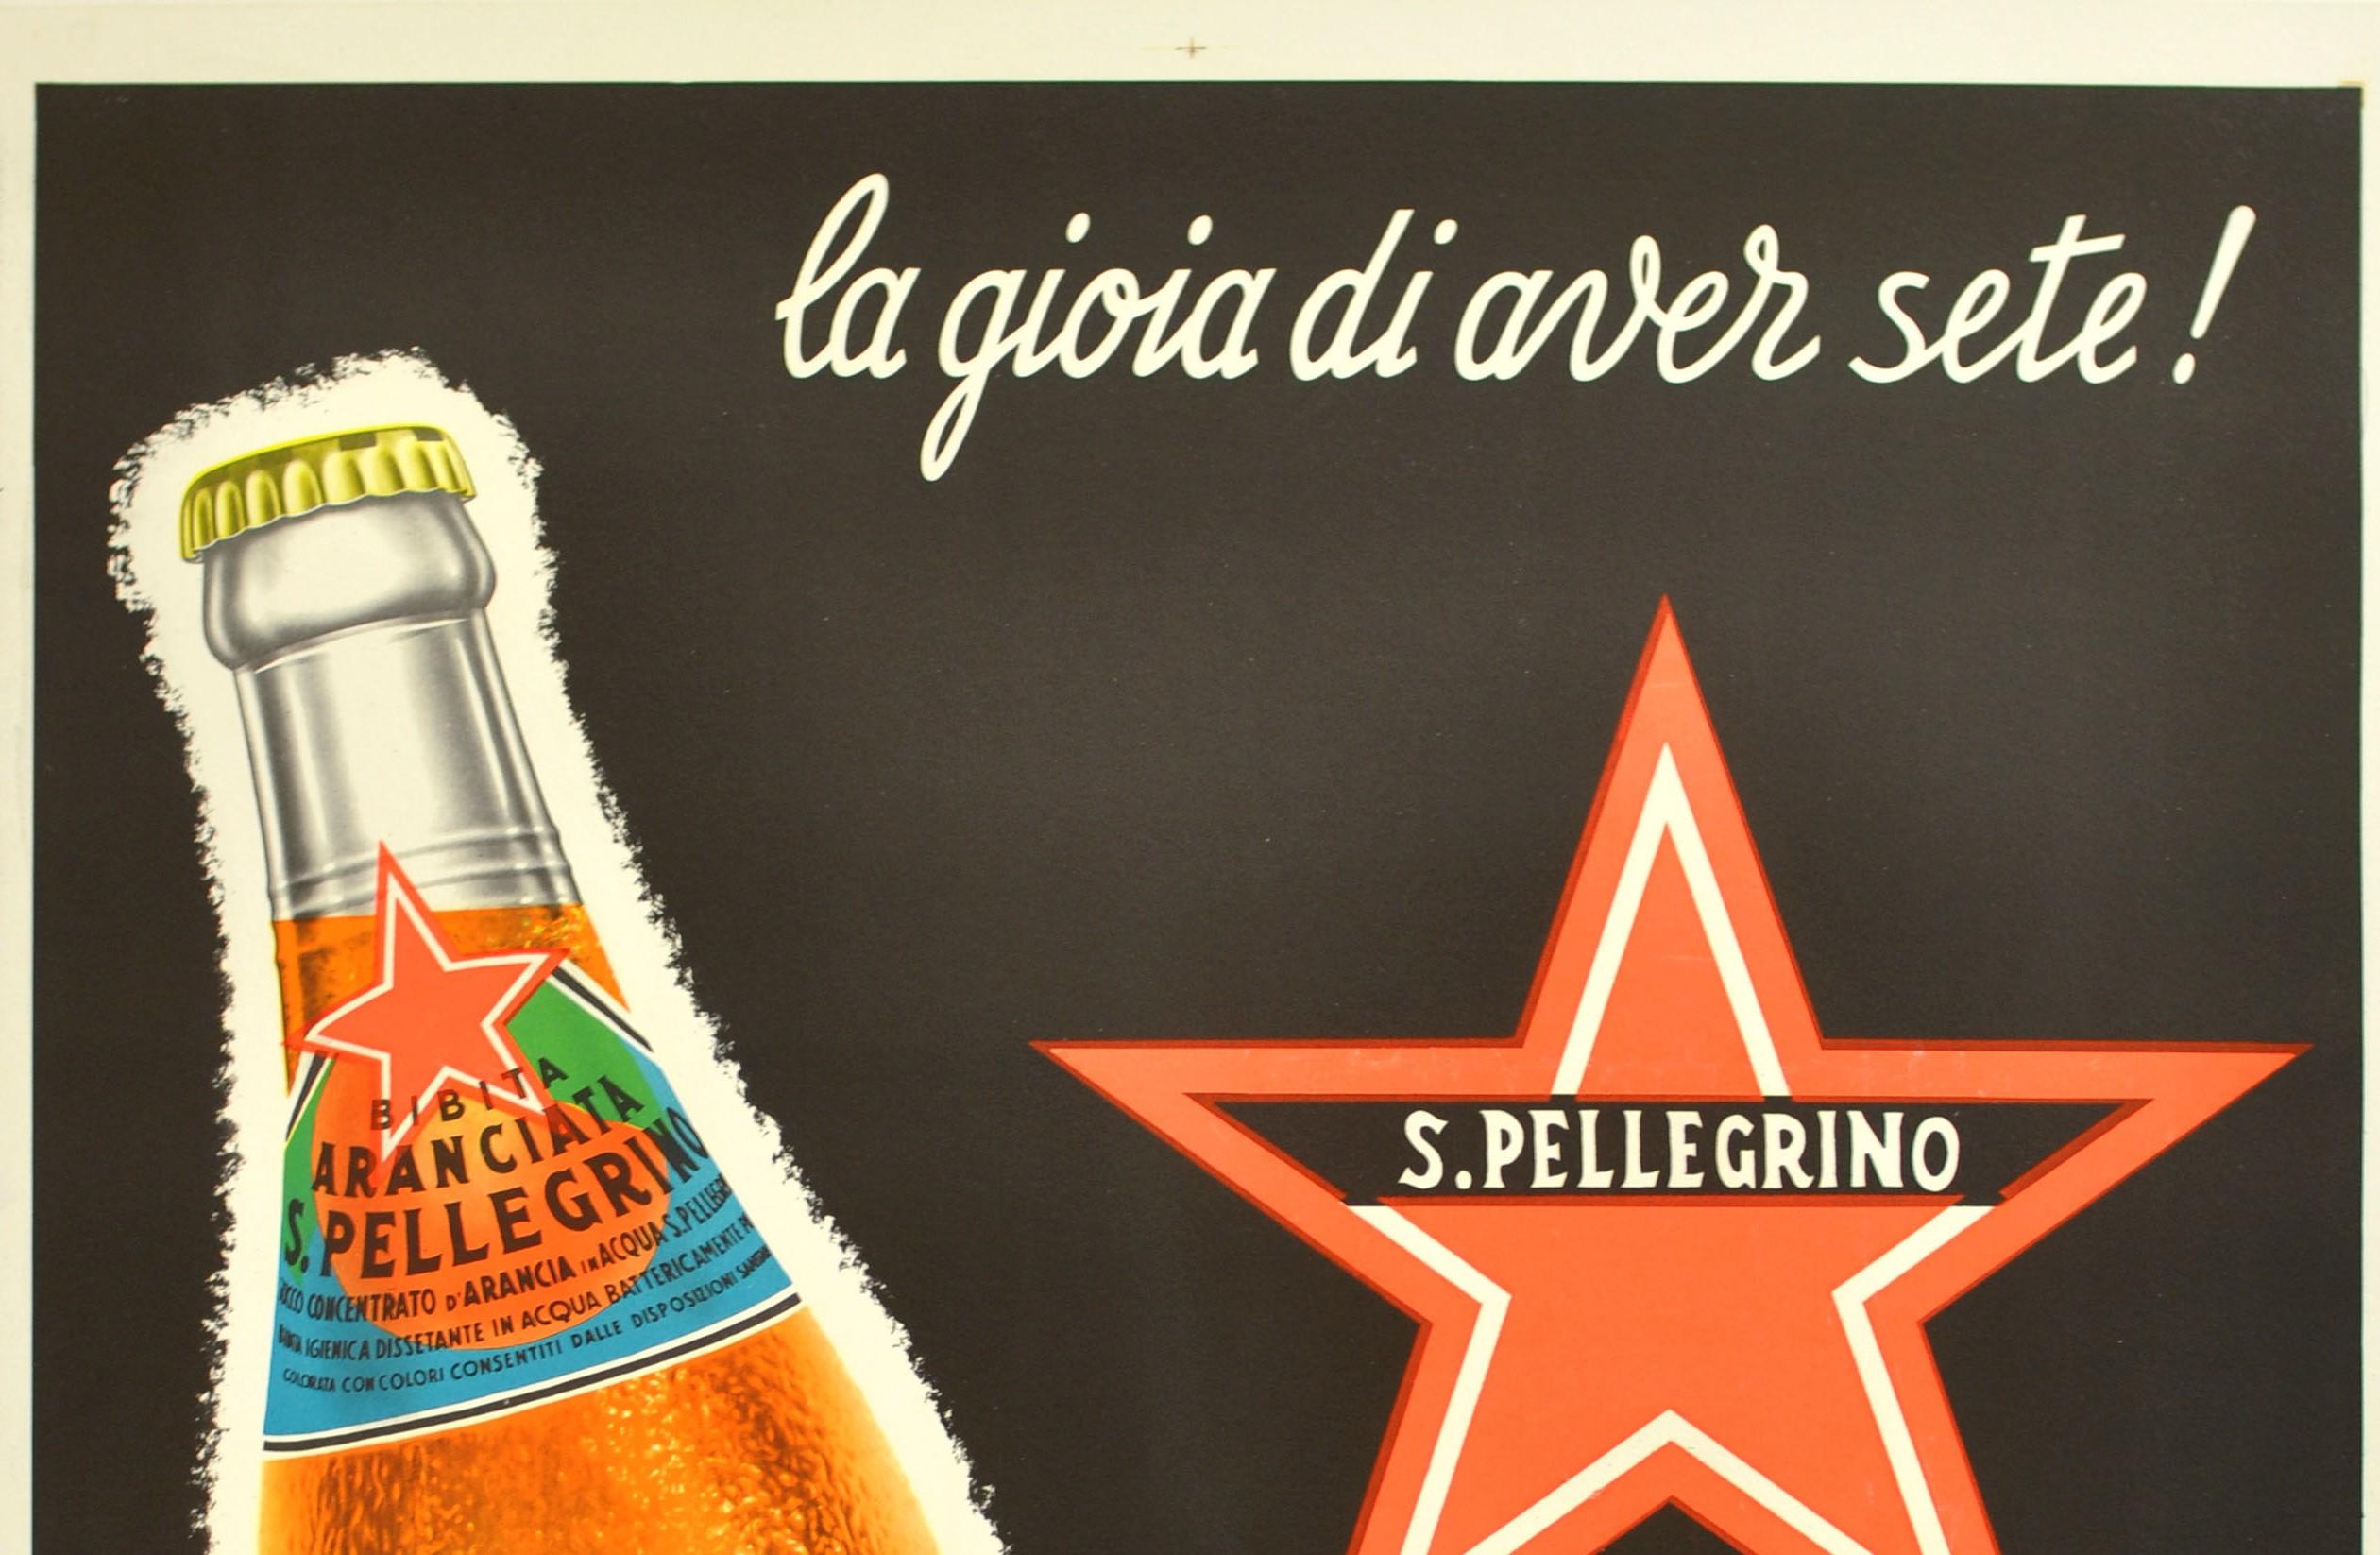 Original Vintage Advertising Poster Iconic Drink Aranciata San Pellegrino Milan - Print by Unknown